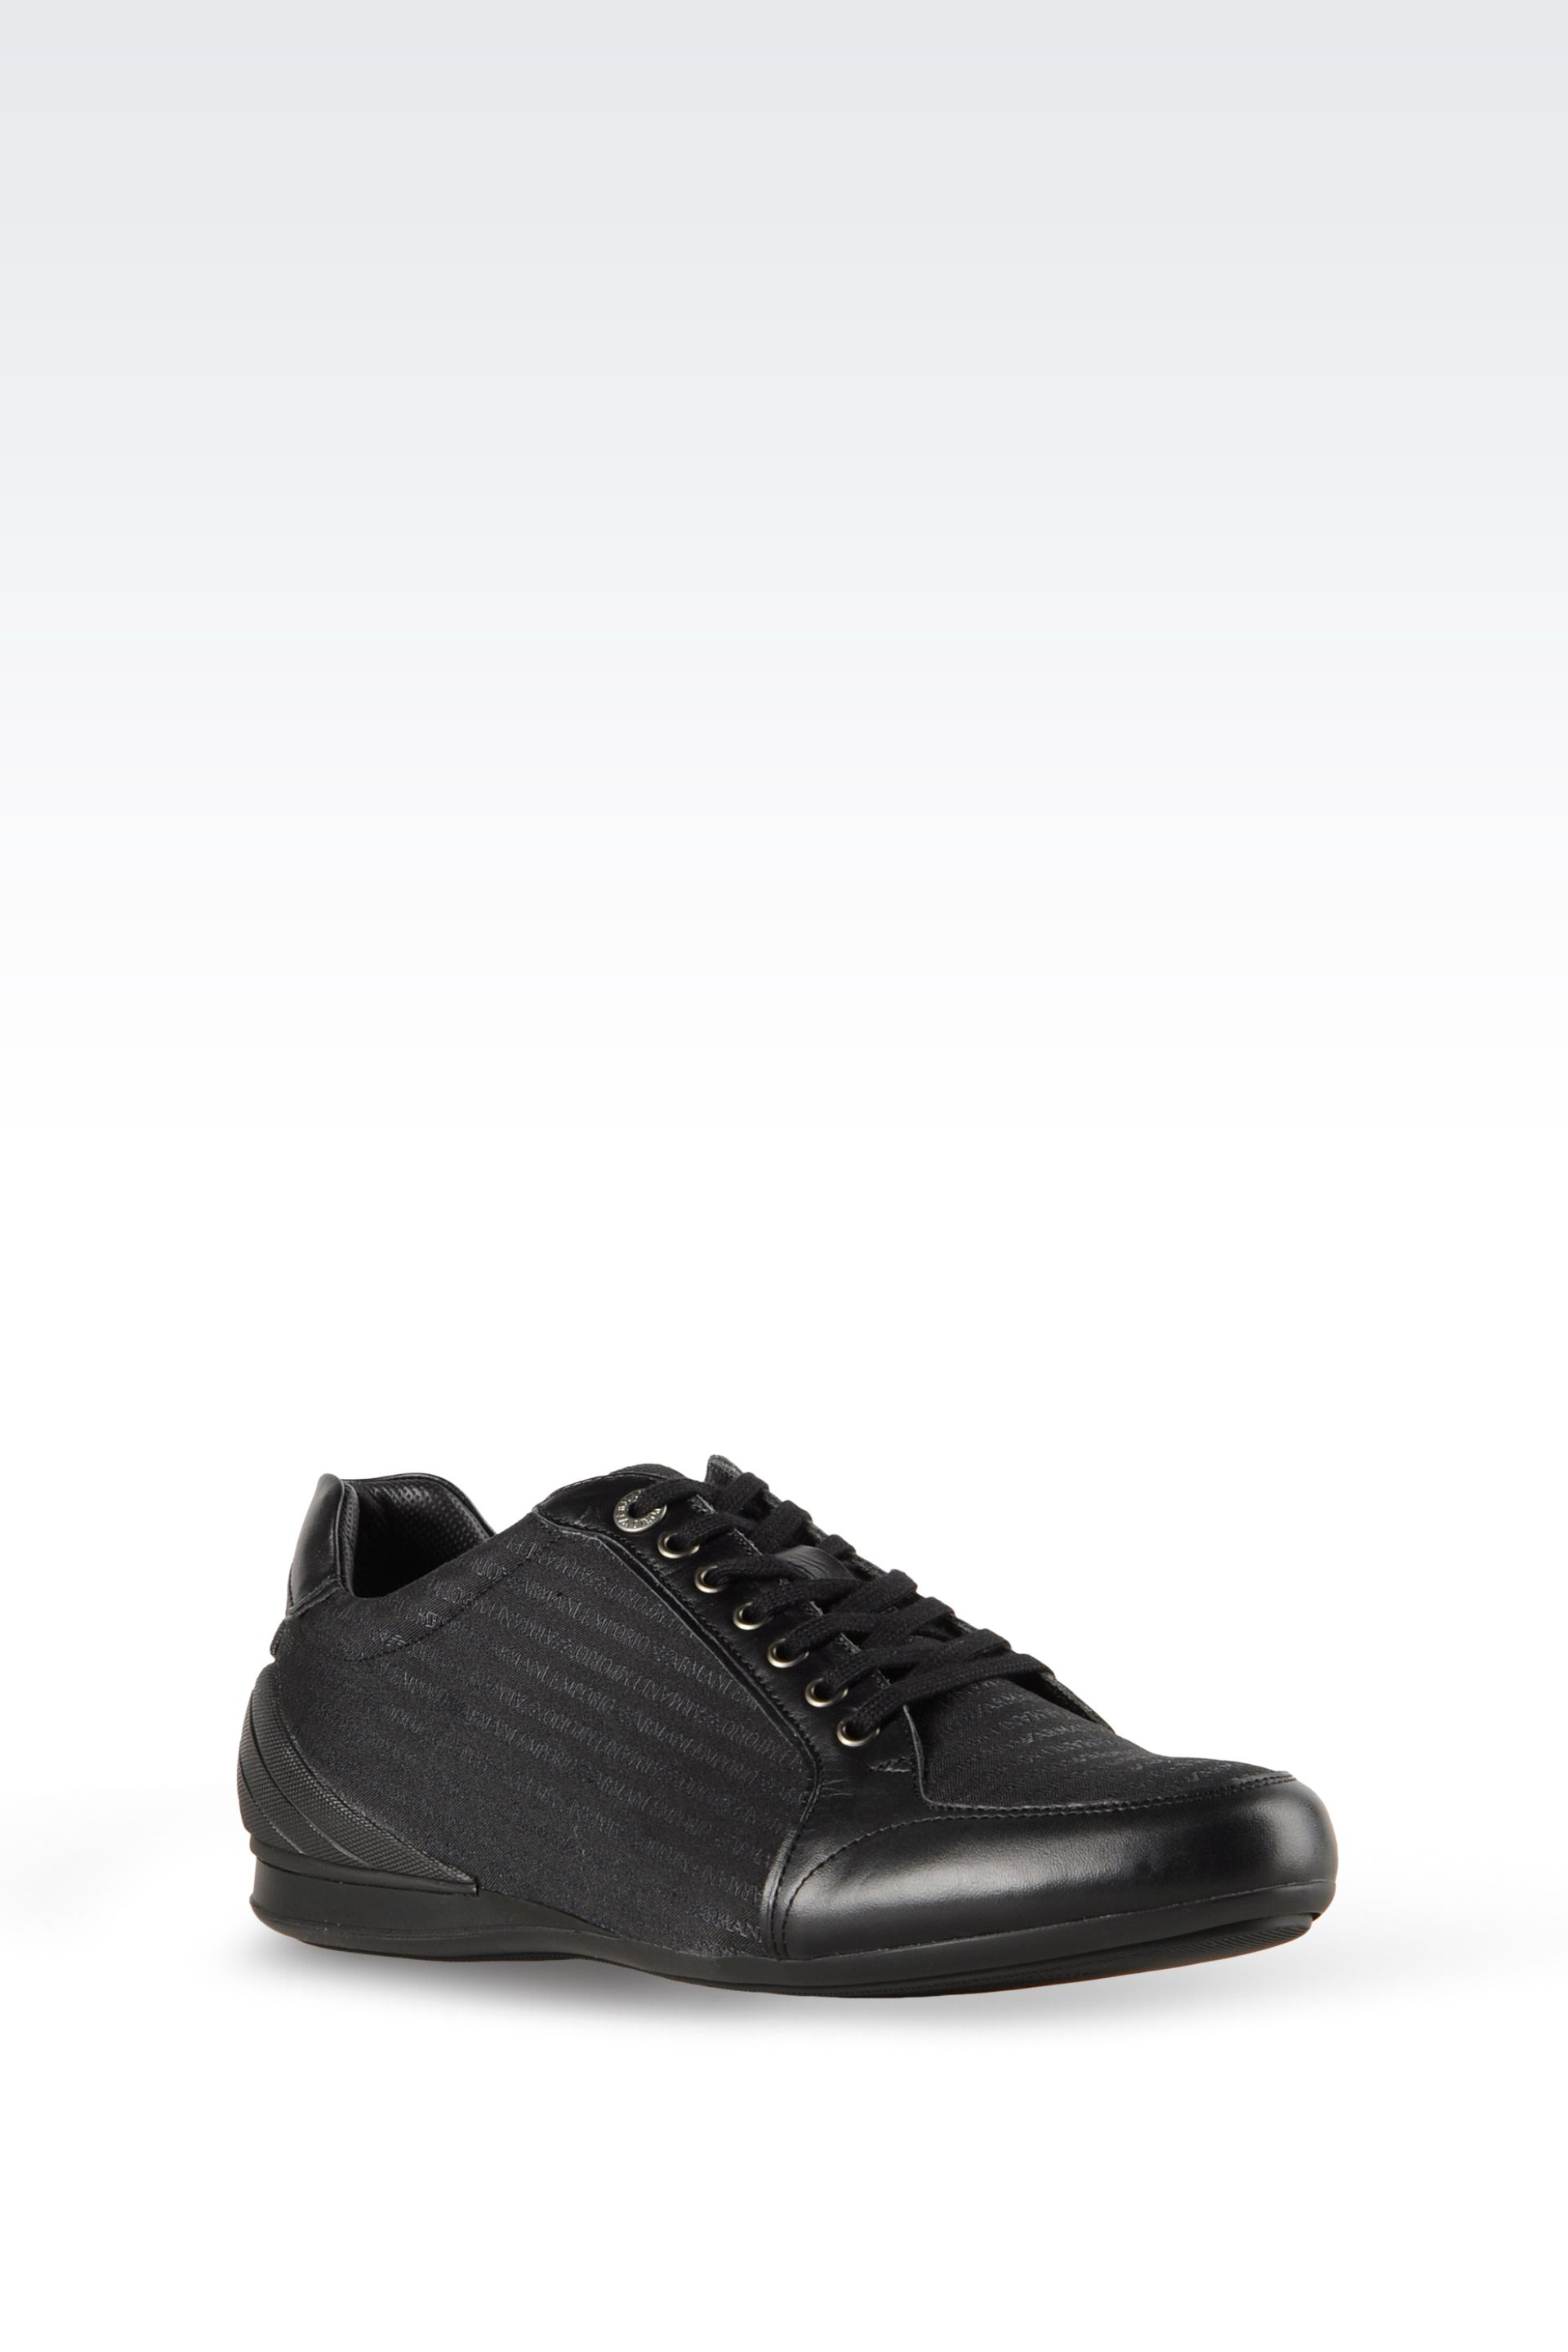 Lyst - Emporio Armani Sneakers in Black for Men